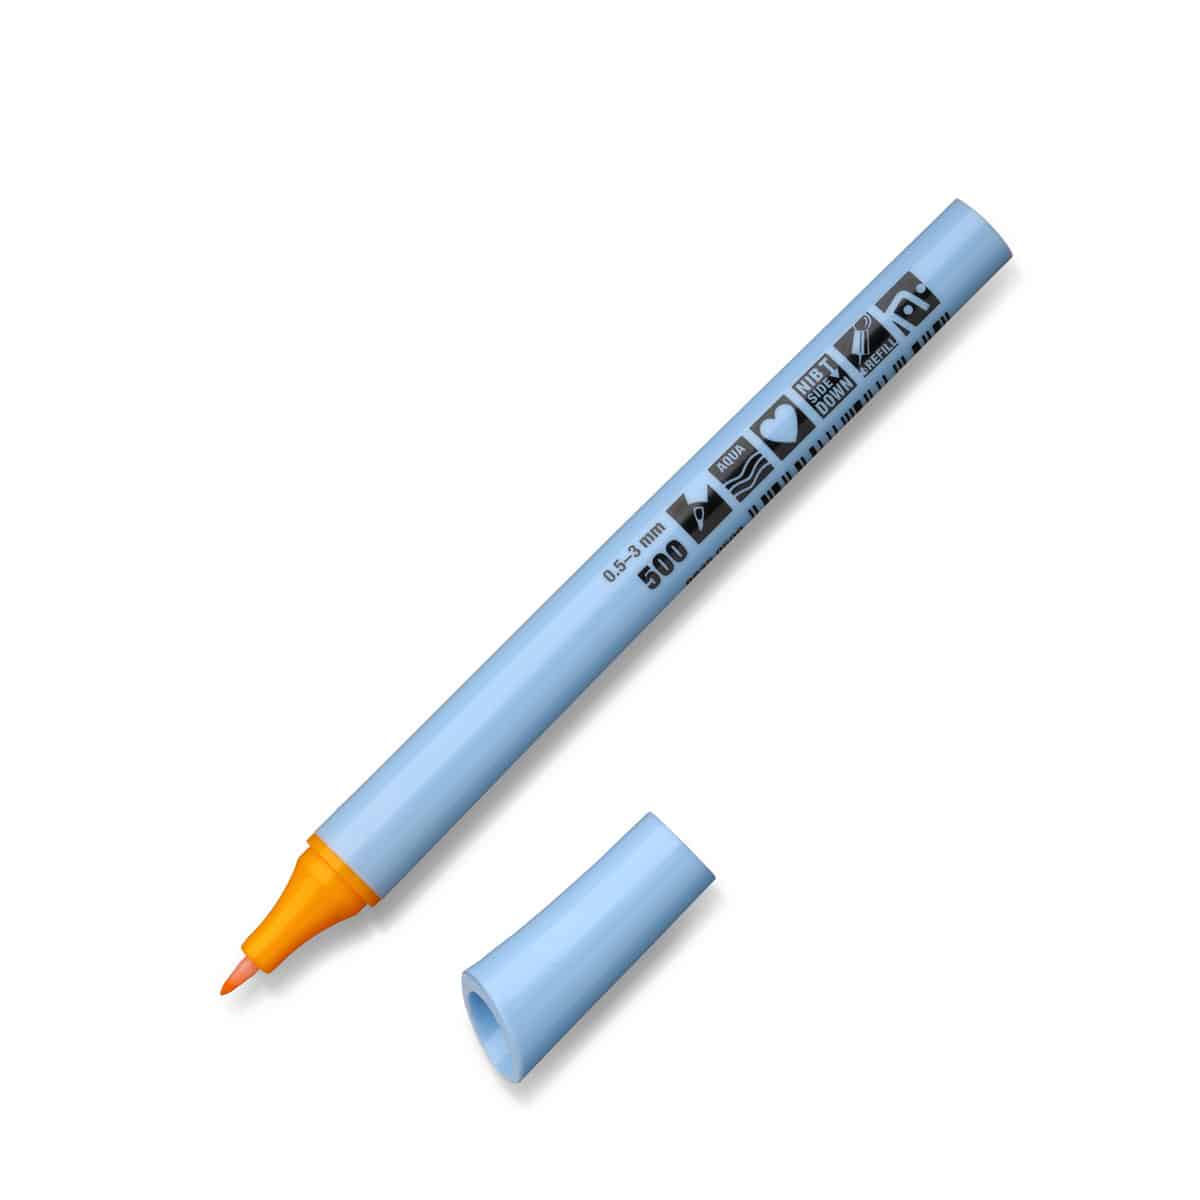 Neuland FineOne® Flex, flexible Faserspitze 0,5-3 mm, Einzelfarben- 500 brillantgelb